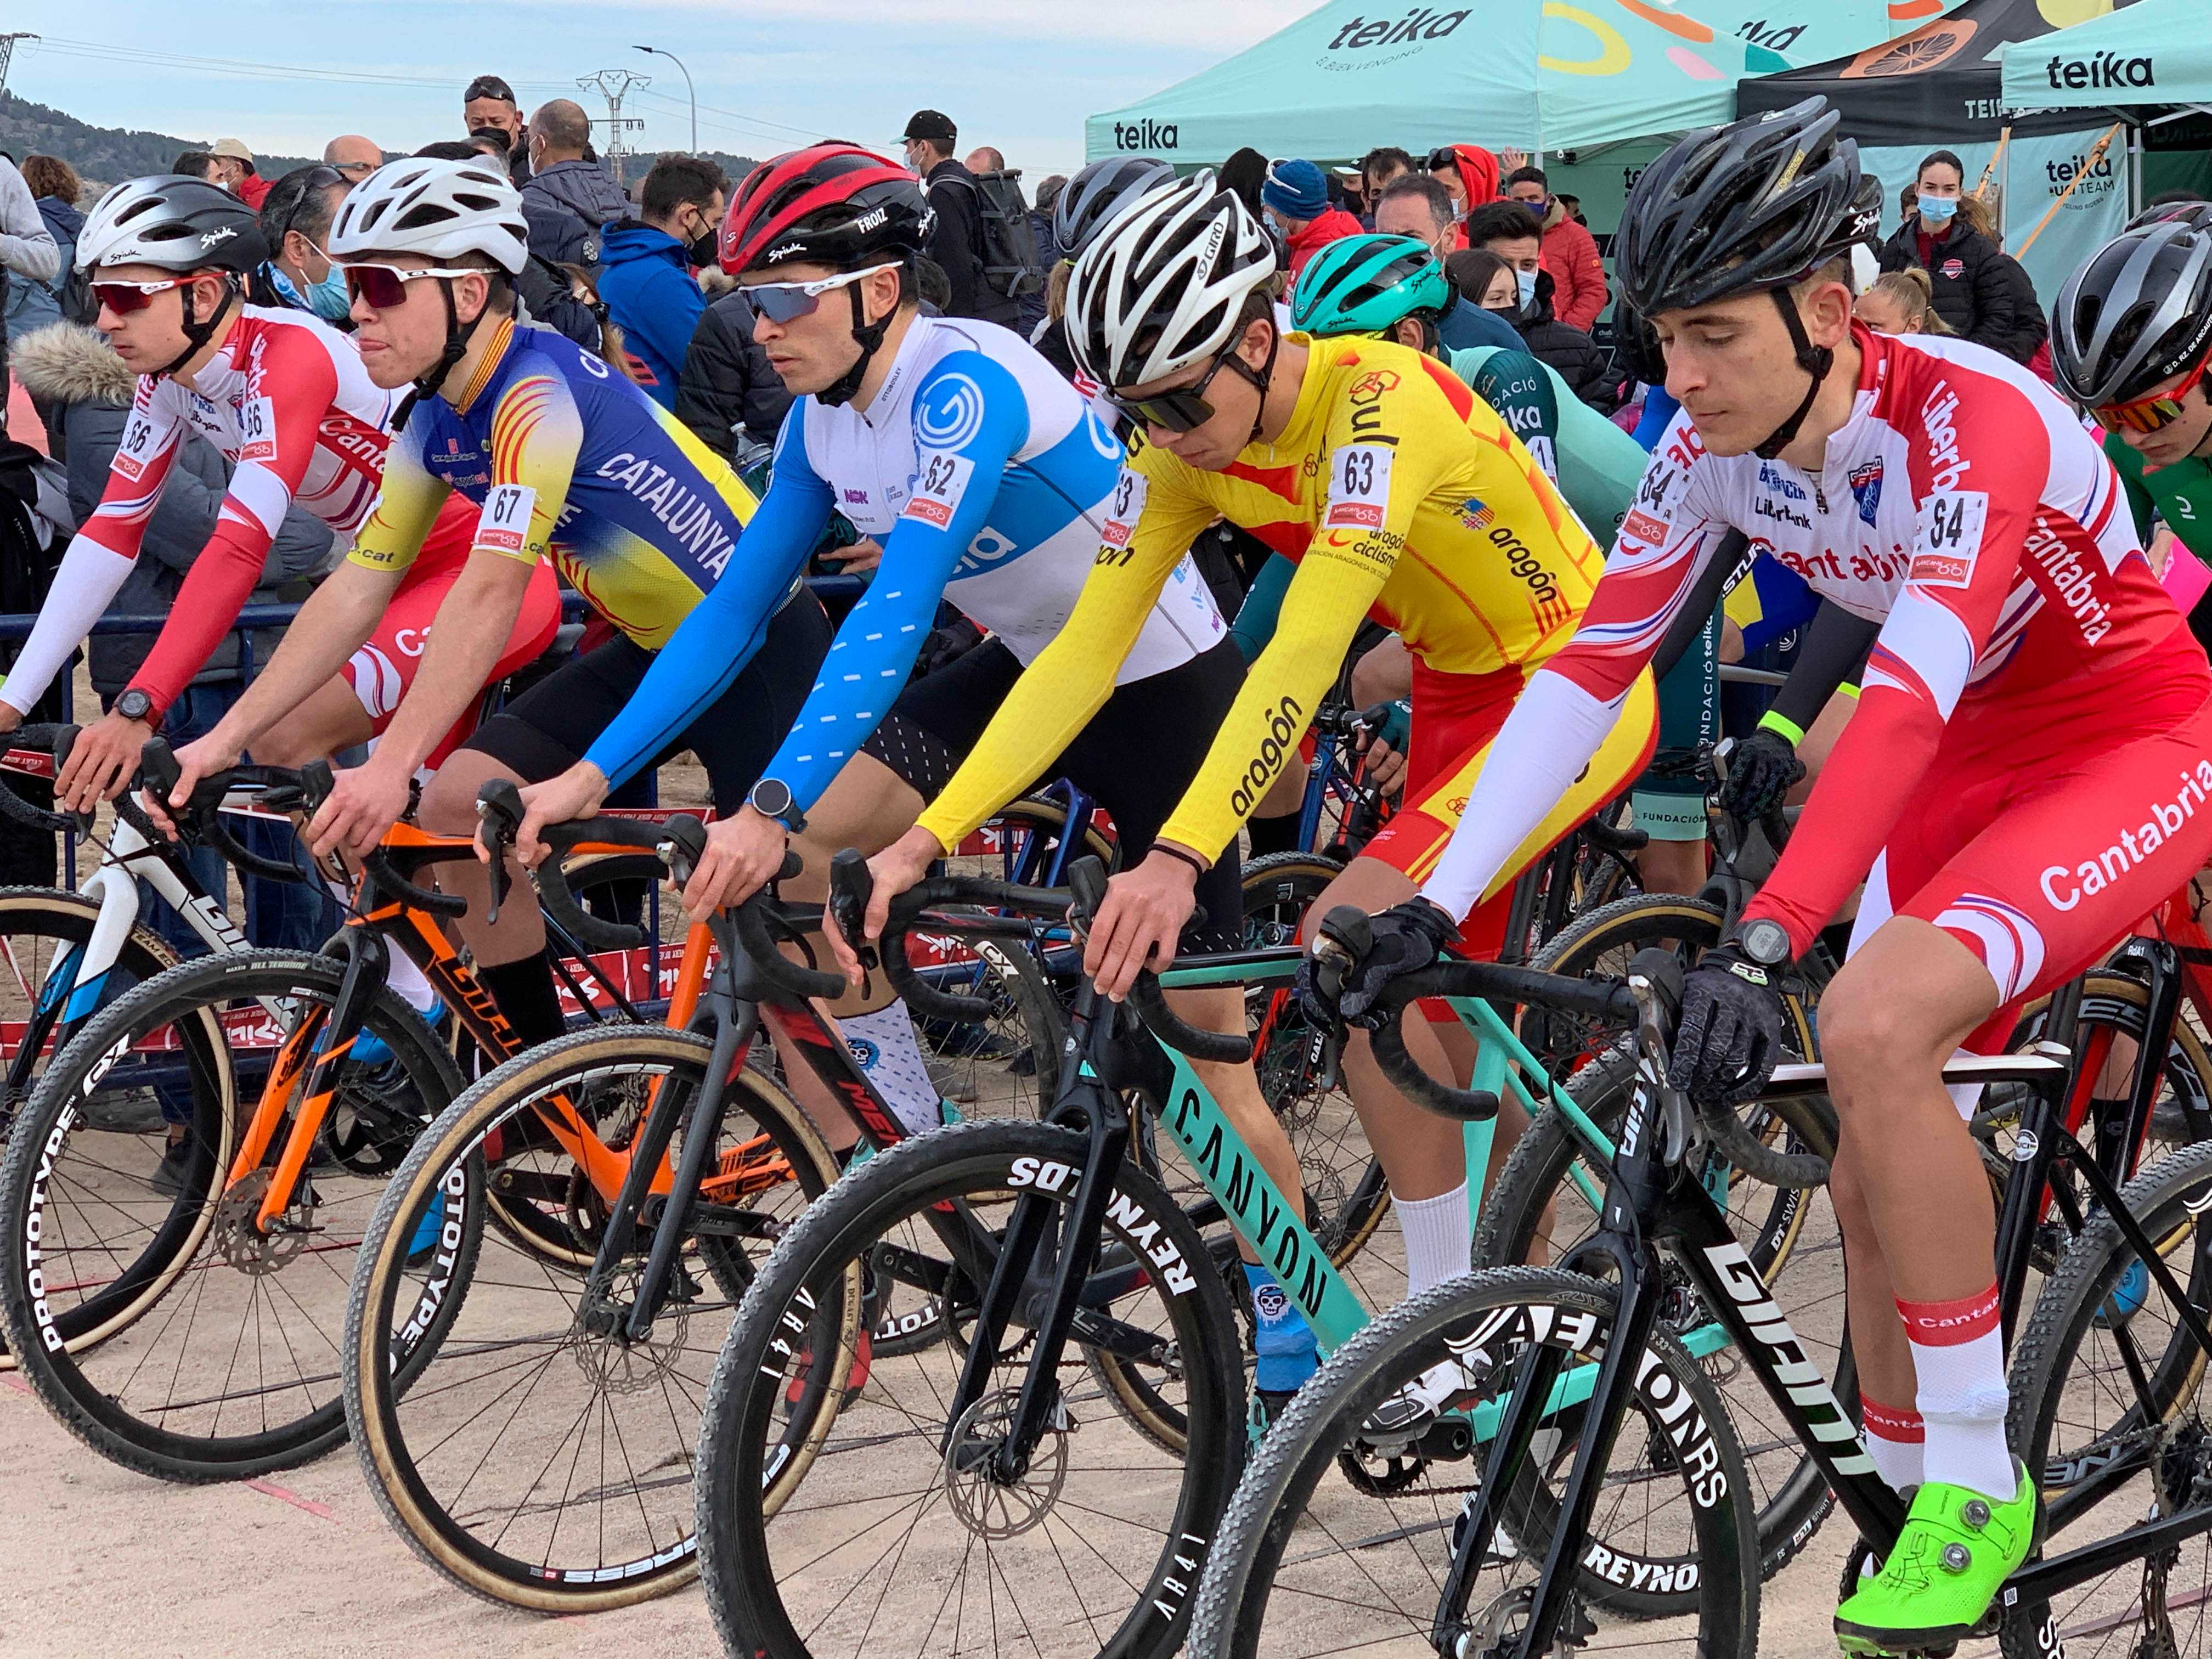 Javier Zaera compite este fin de semana en Bélgica y Holanda en su camino hacia el Mundial de Ciclocross